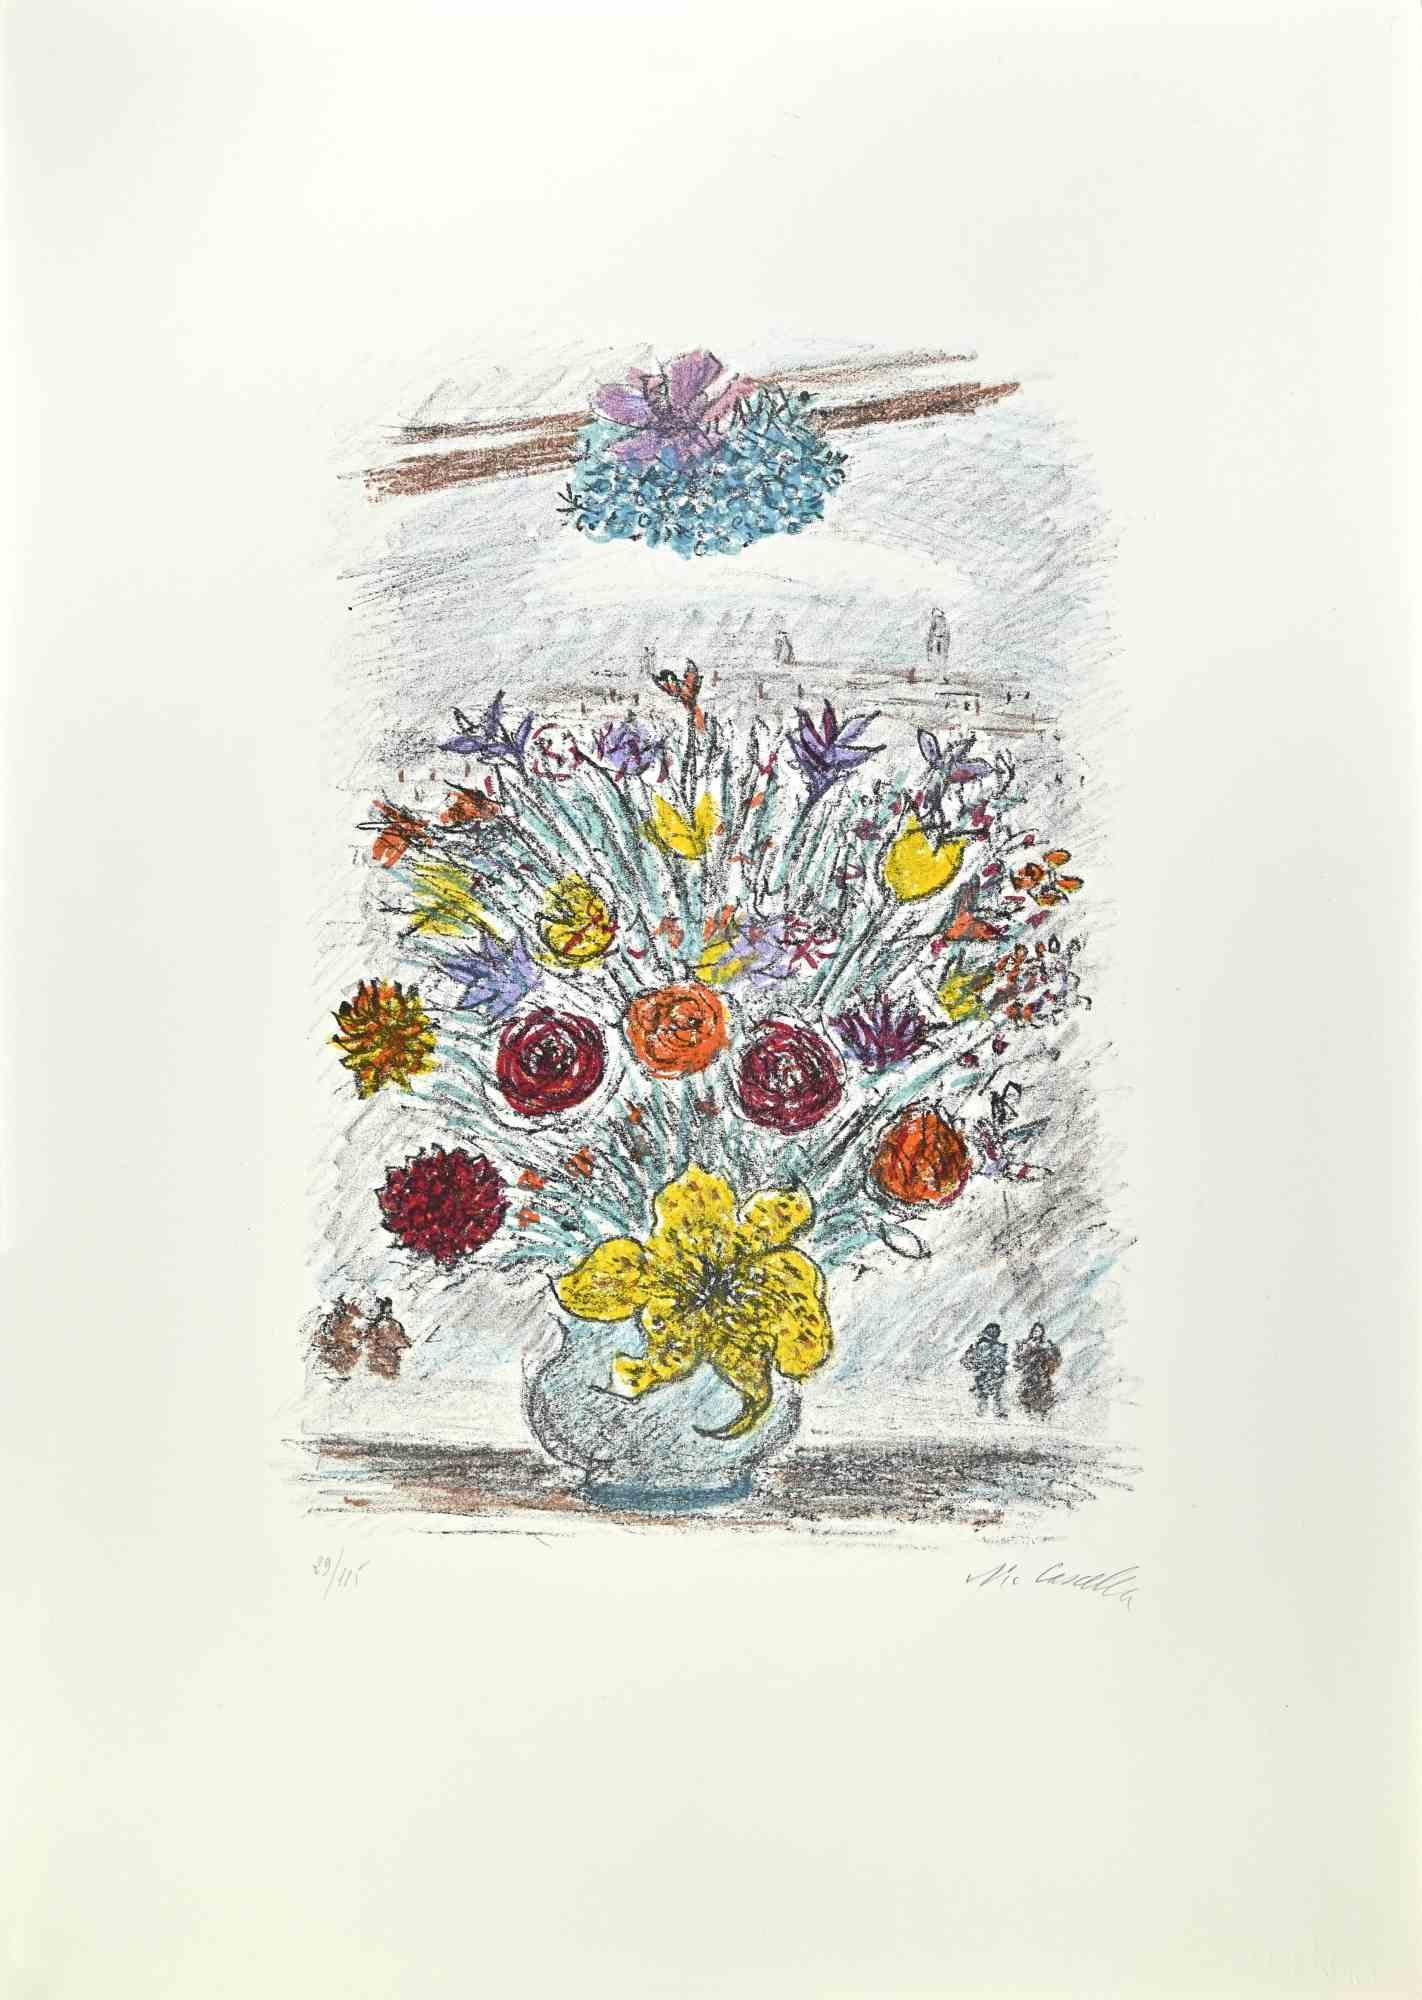 Scilla ist ein Kunstwerk des italienischen Künstlers Michele Cascella aus dem Jahr 1979.

Kolorierte Lithographie auf Papier des Portfolios "Landschaft", 1979, mit sechs Originallithographien und den Gedichten von Franco Simongini mit dem Titel